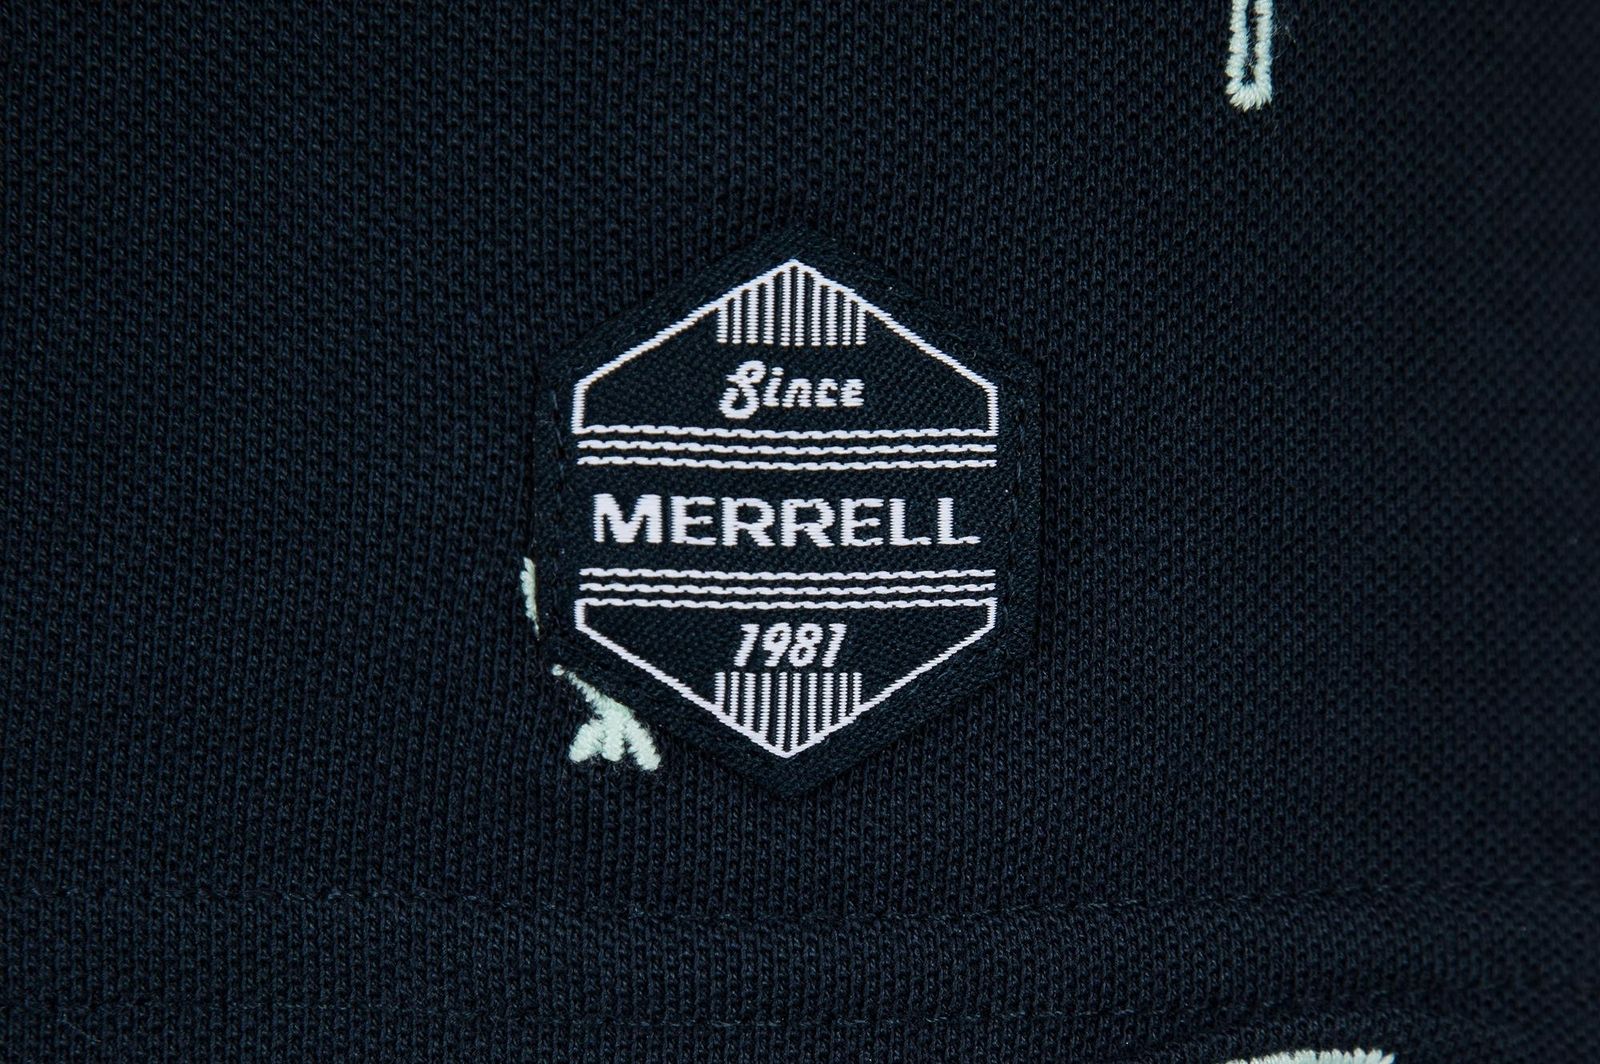   Merrell Men's Polo, : . S19AMRPOM01-M1.  48